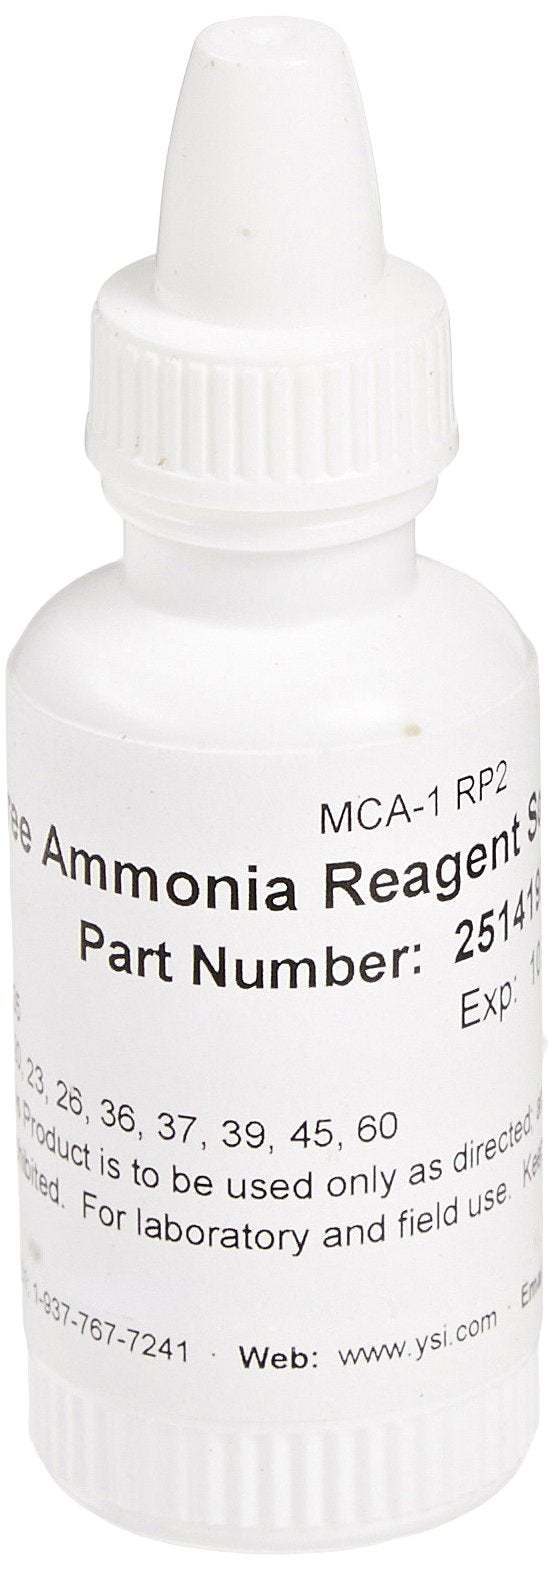 YSI 251419RP2Y Free Ammonia Liquid Reagent for pHotoFlex Colorimeter, 40 Tests, 4ml Volume